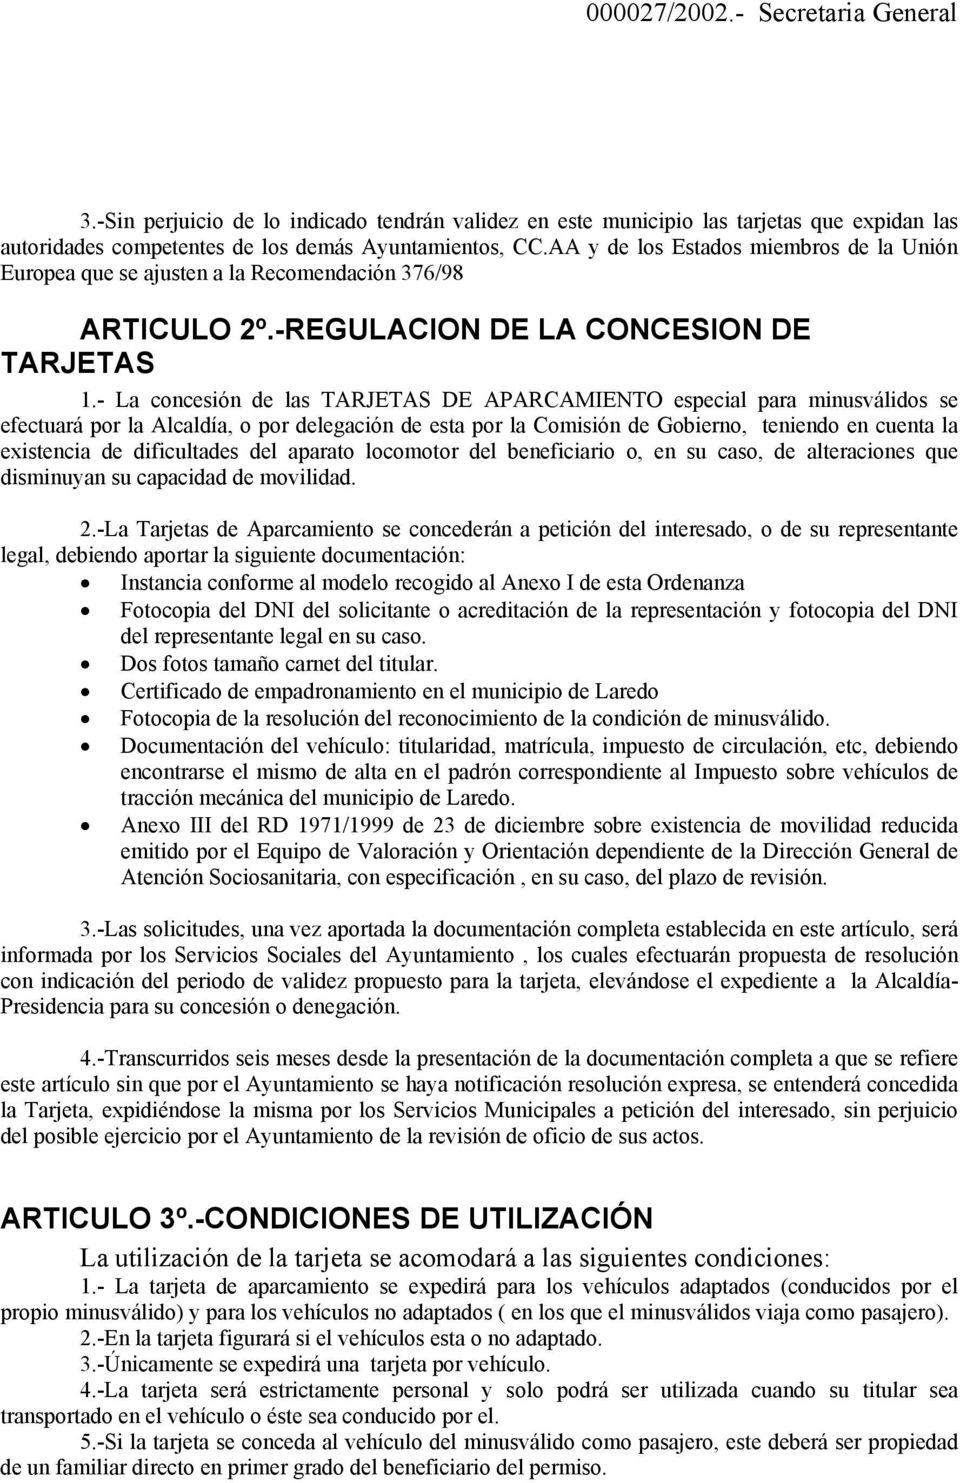 - La concesión de las TARJETAS DE APARCAMIENTO especial para minusválidos se efectuará por la Alcaldía, o por delegación de esta por la Comisión de Gobierno, teniendo en cuenta la existencia de